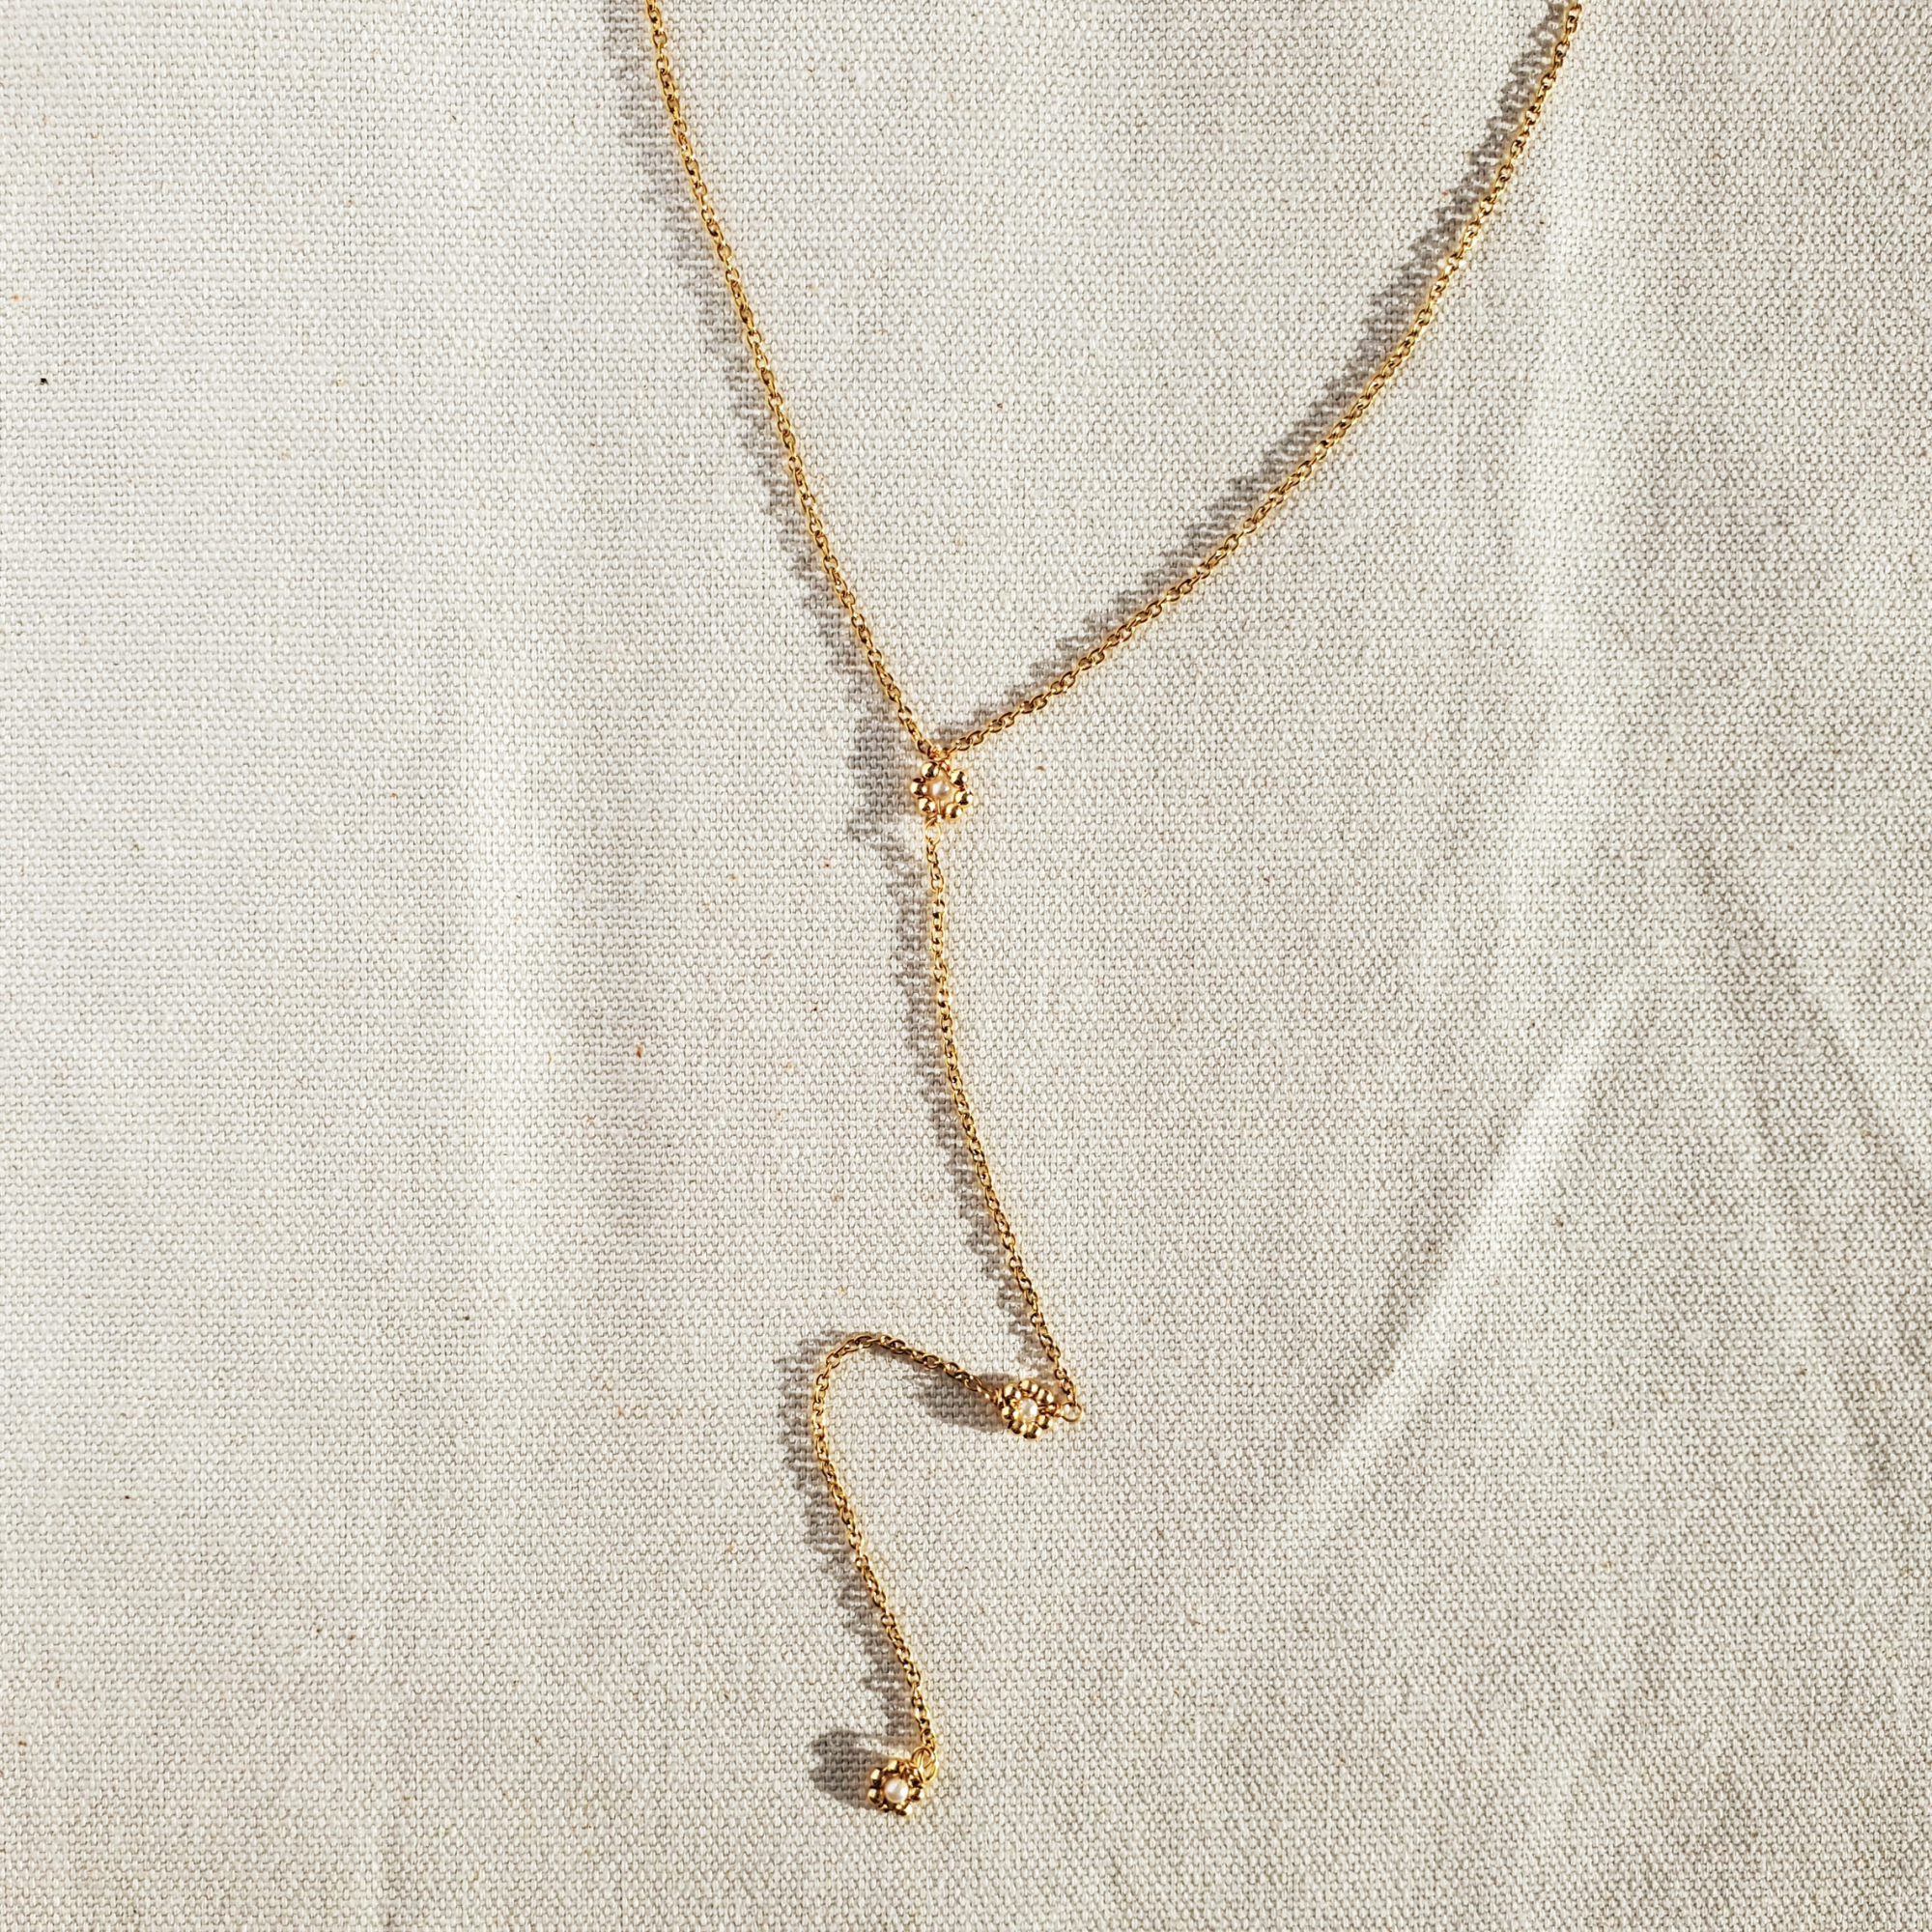 Lariat daisy necklace